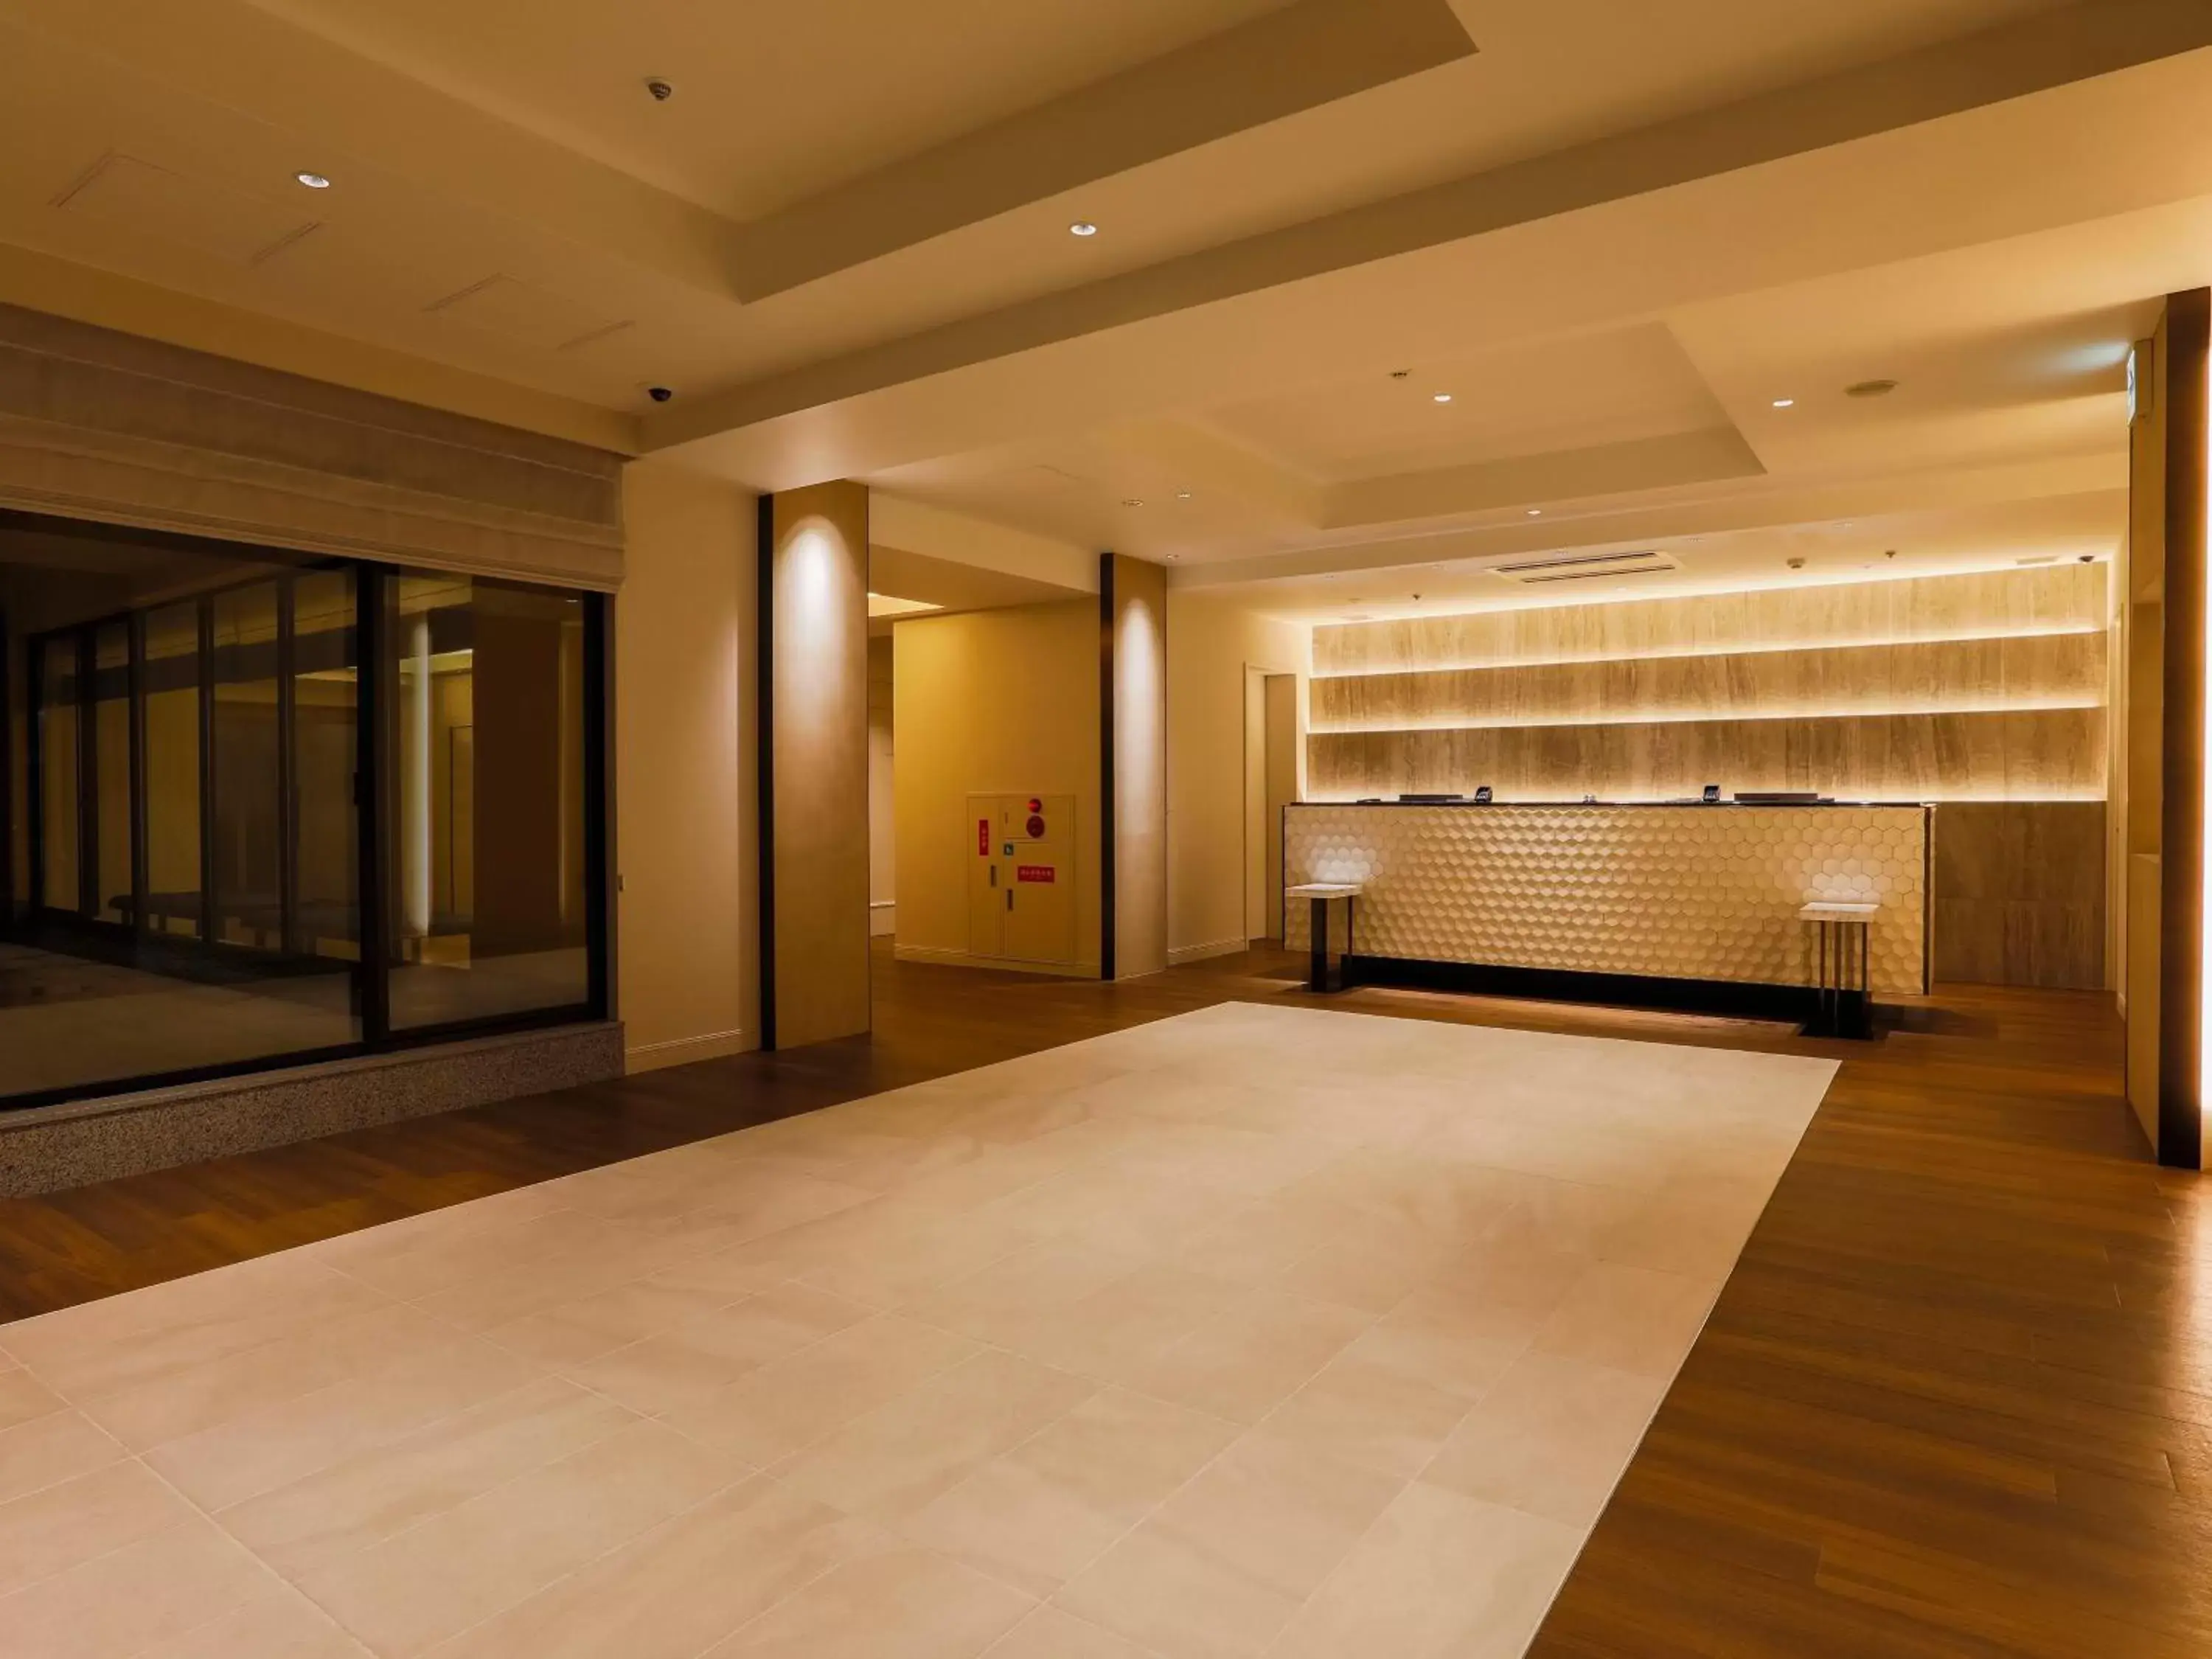 Lobby or reception, Lobby/Reception in HOTEL MYSTAYS Aomori Station